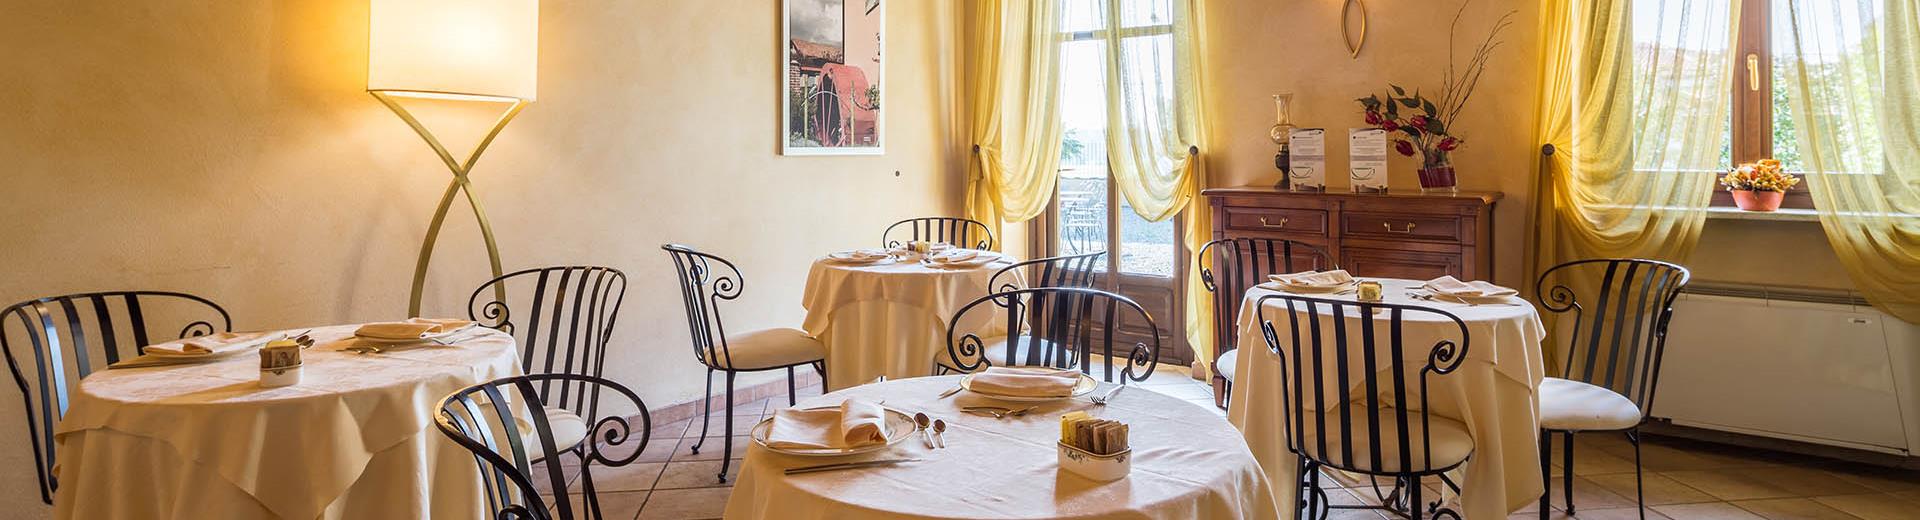 La colazione al Best Western Plus Hotel Le Rondini, vicino all ''''aeroporto di Torino, offre un ricco buffet dolce e salato, prodotti tipici locali, biologici, per intolleranze ed estratti di frutta e verdura.